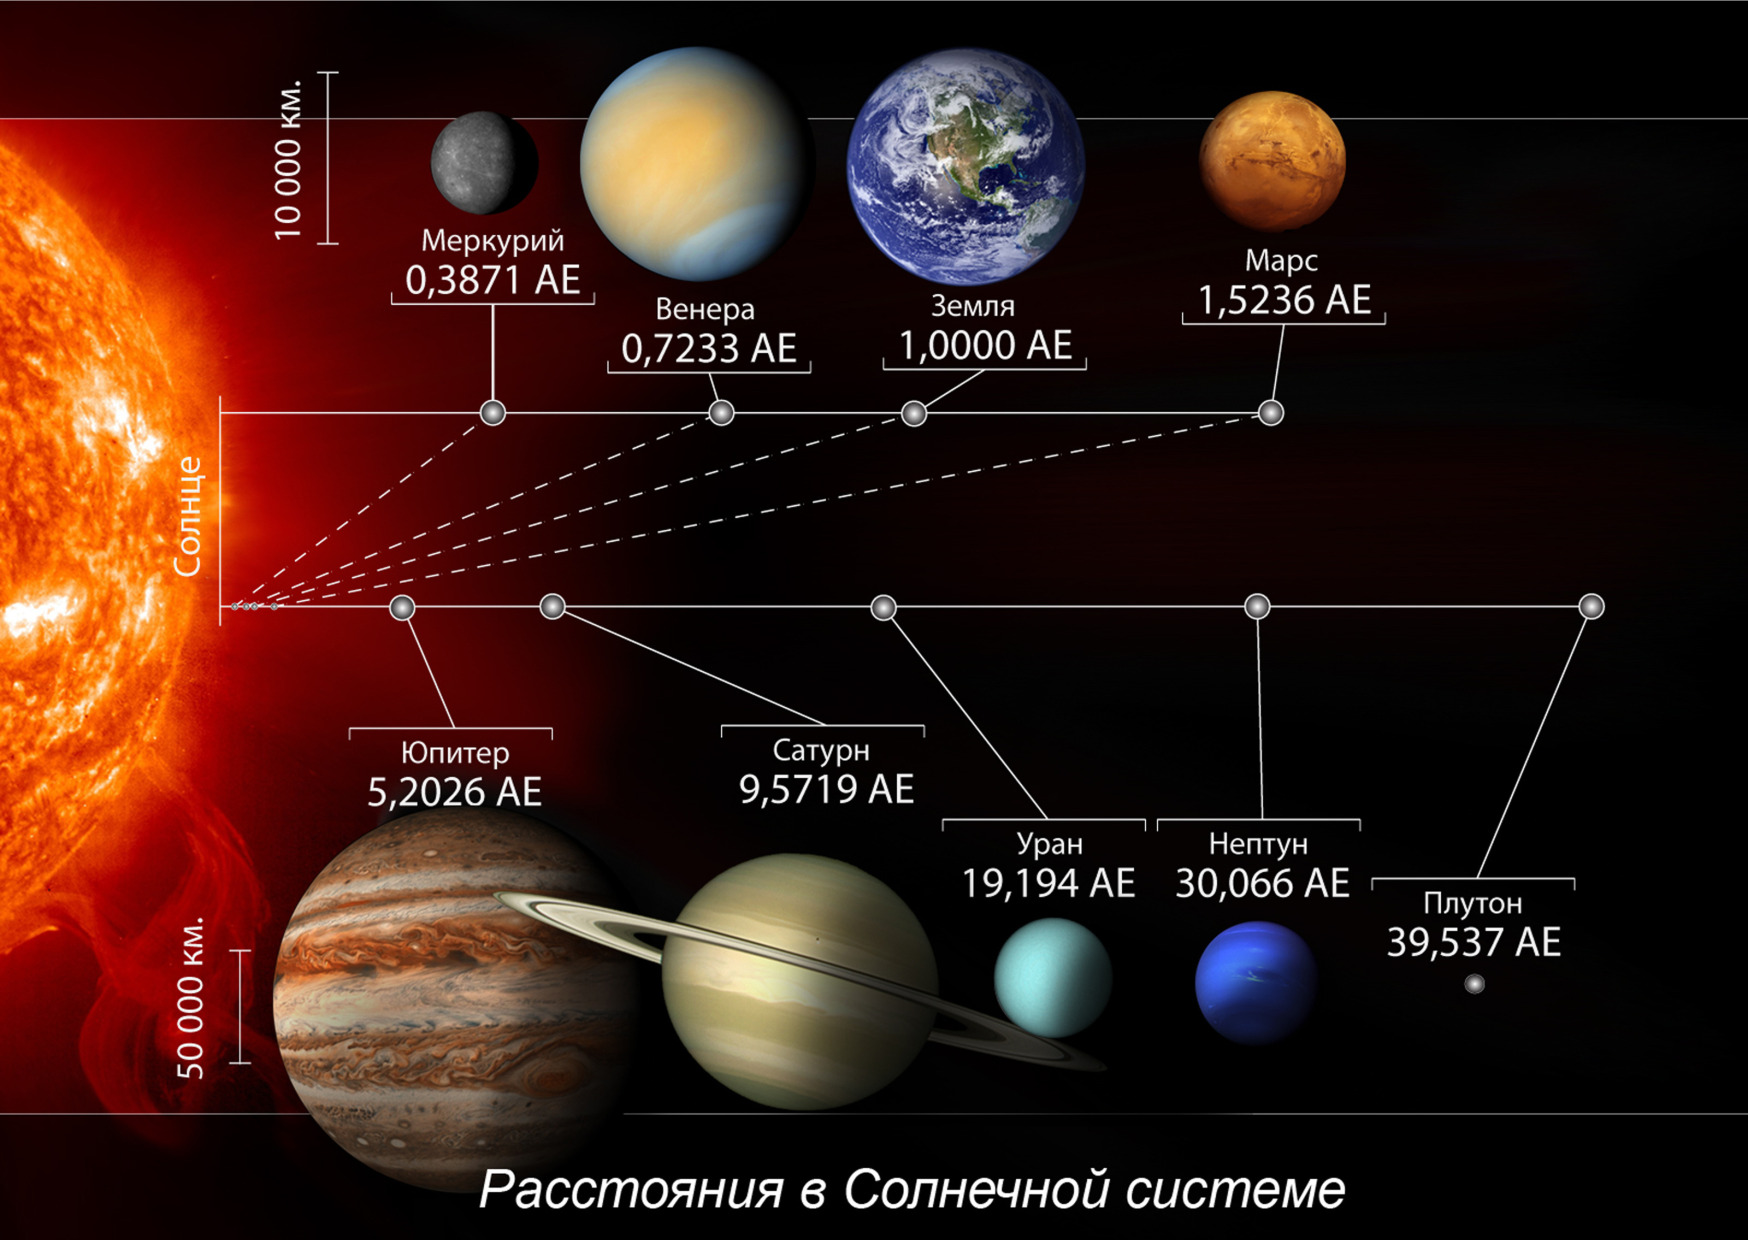 фото всех планет солнечной системы